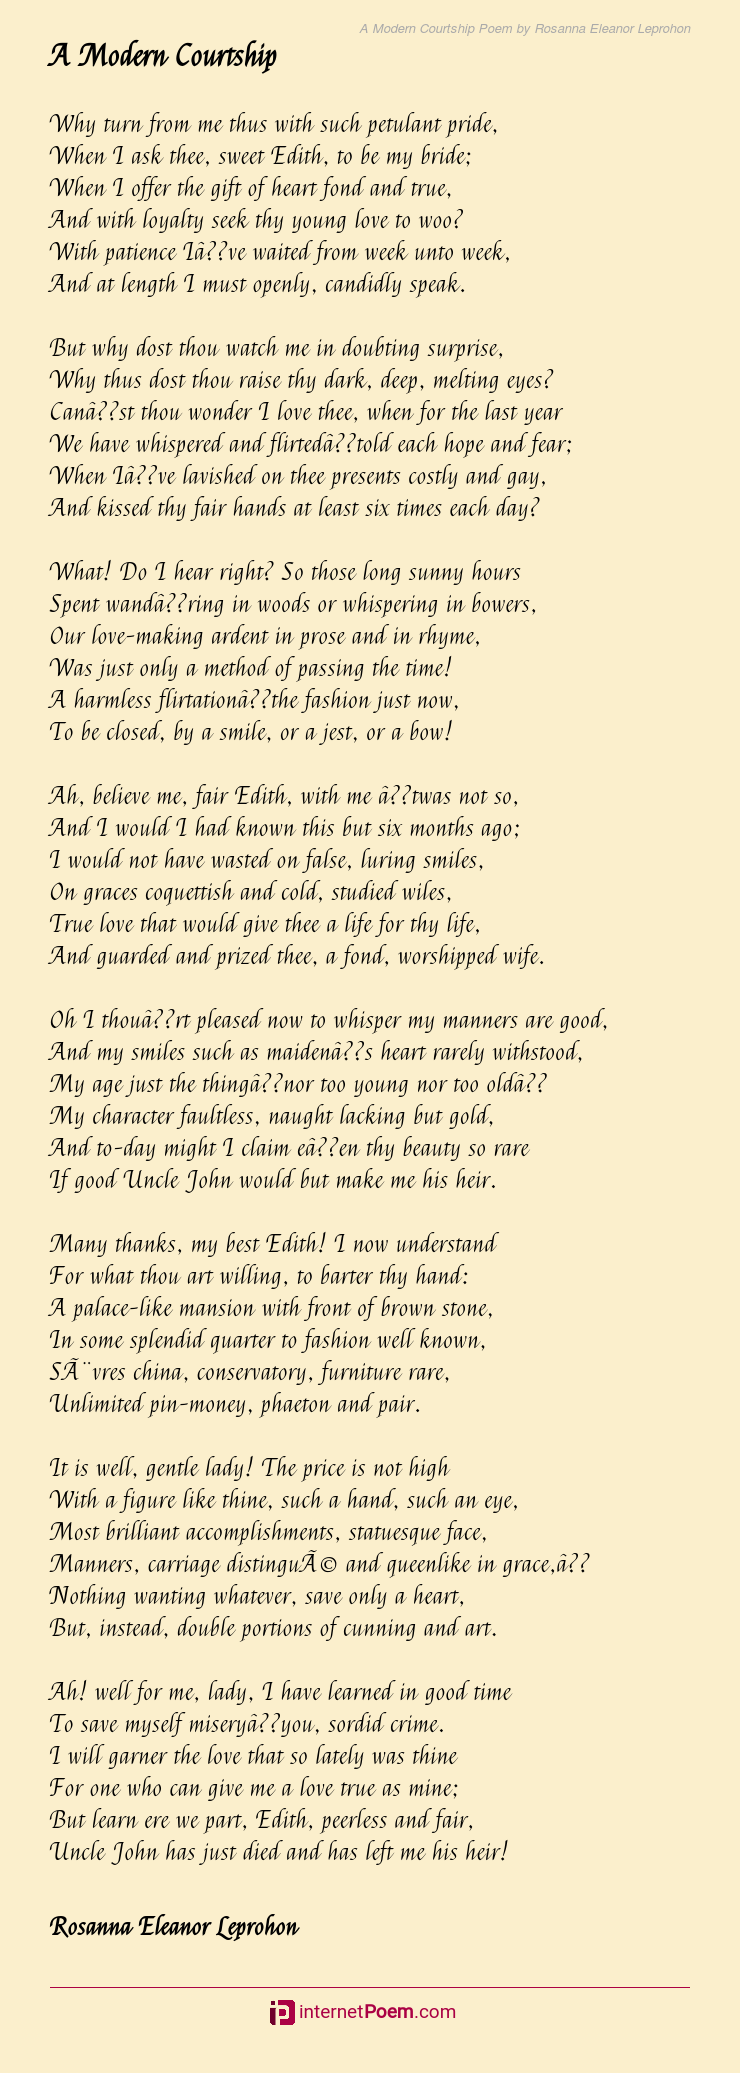 A Modern Courtship Poem Rhyme Scheme